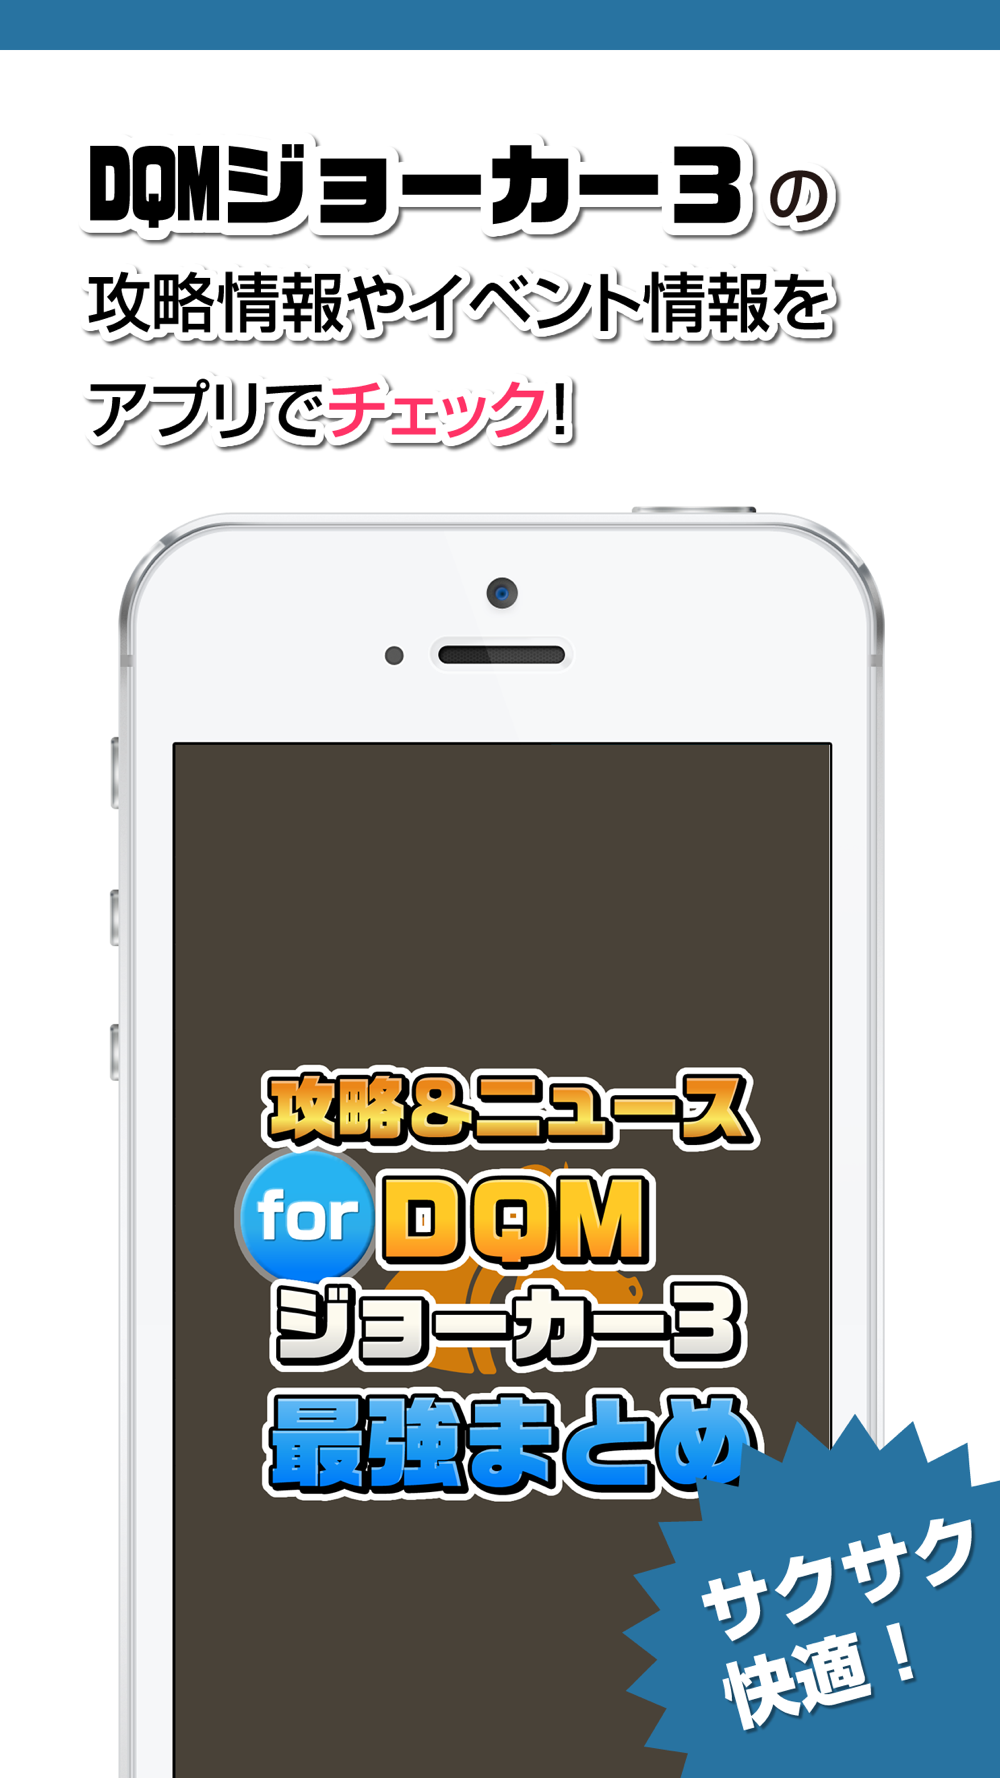 攻略ニュースまとめ For ドラゴンクエストモンスターズ ジョーカー3dqmj3 Free Download App For Iphone Steprimo Com